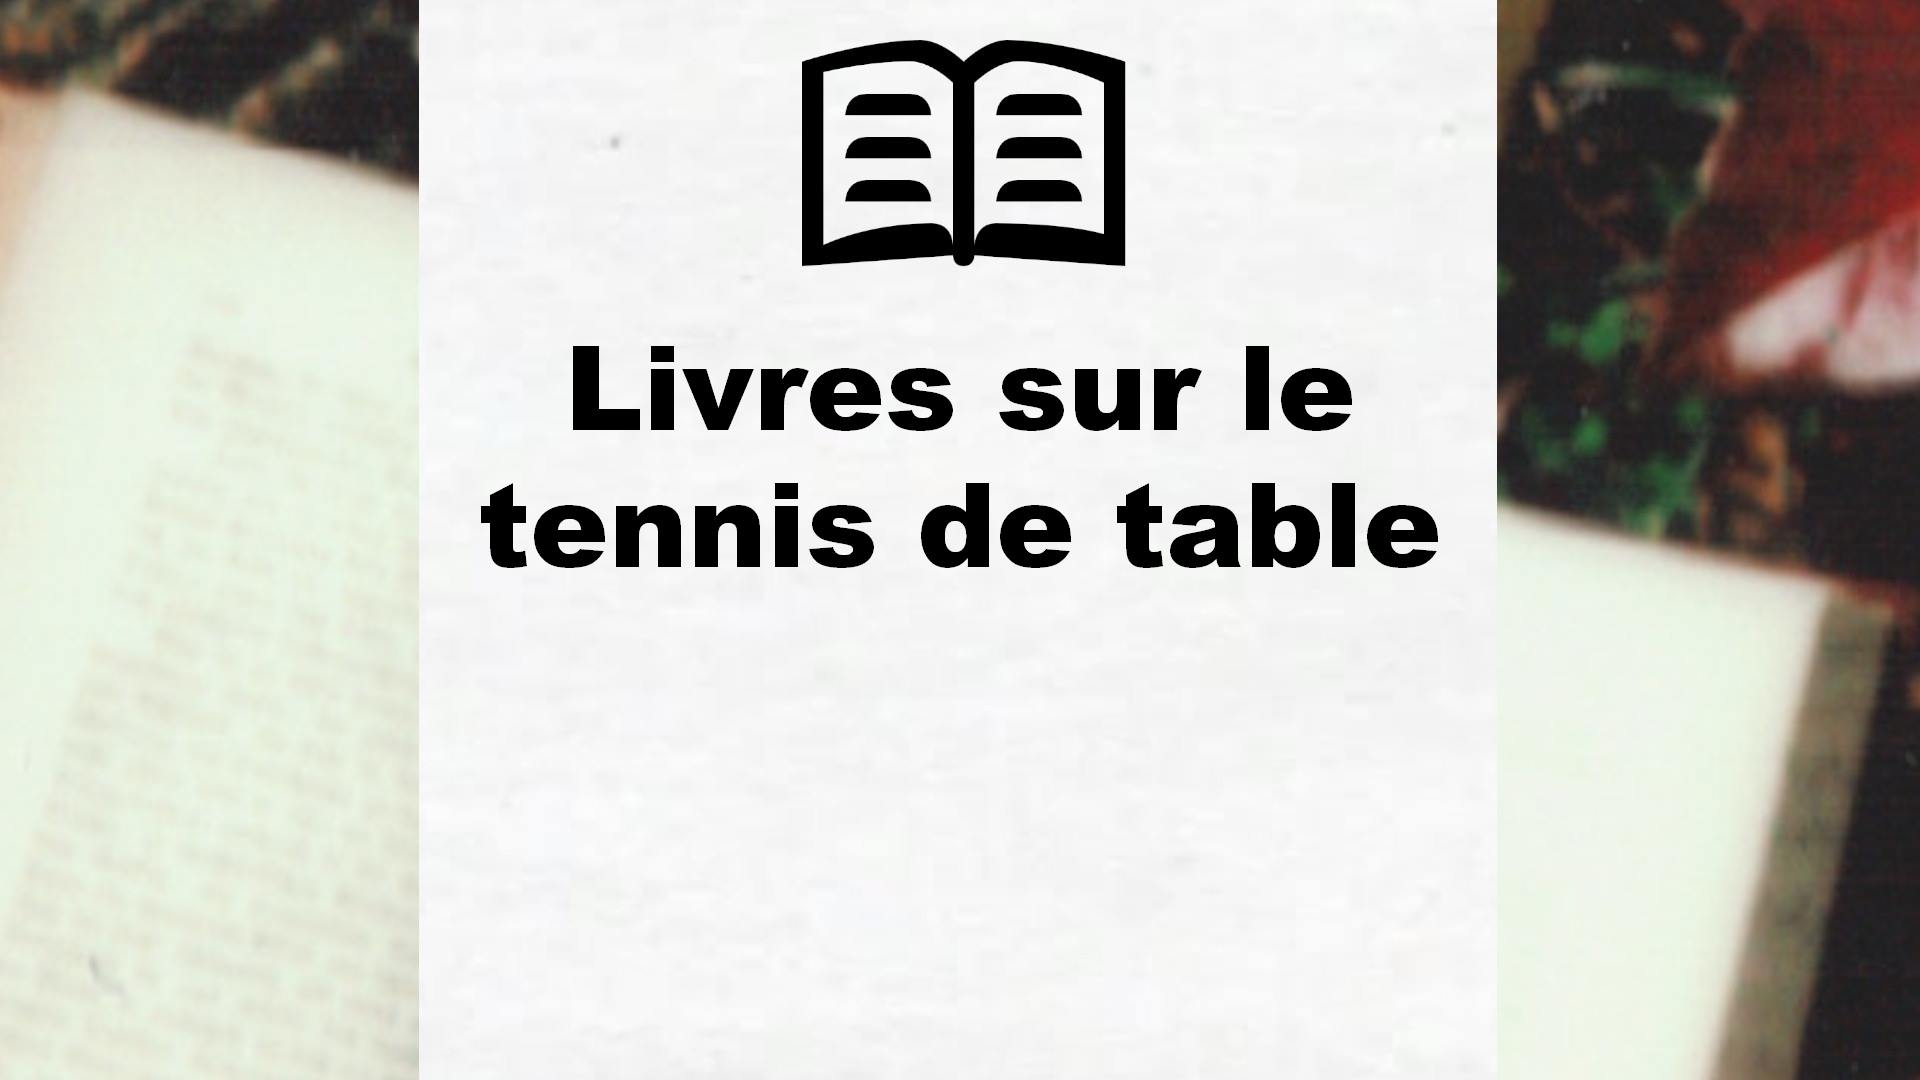 Livres sur le tennis de table